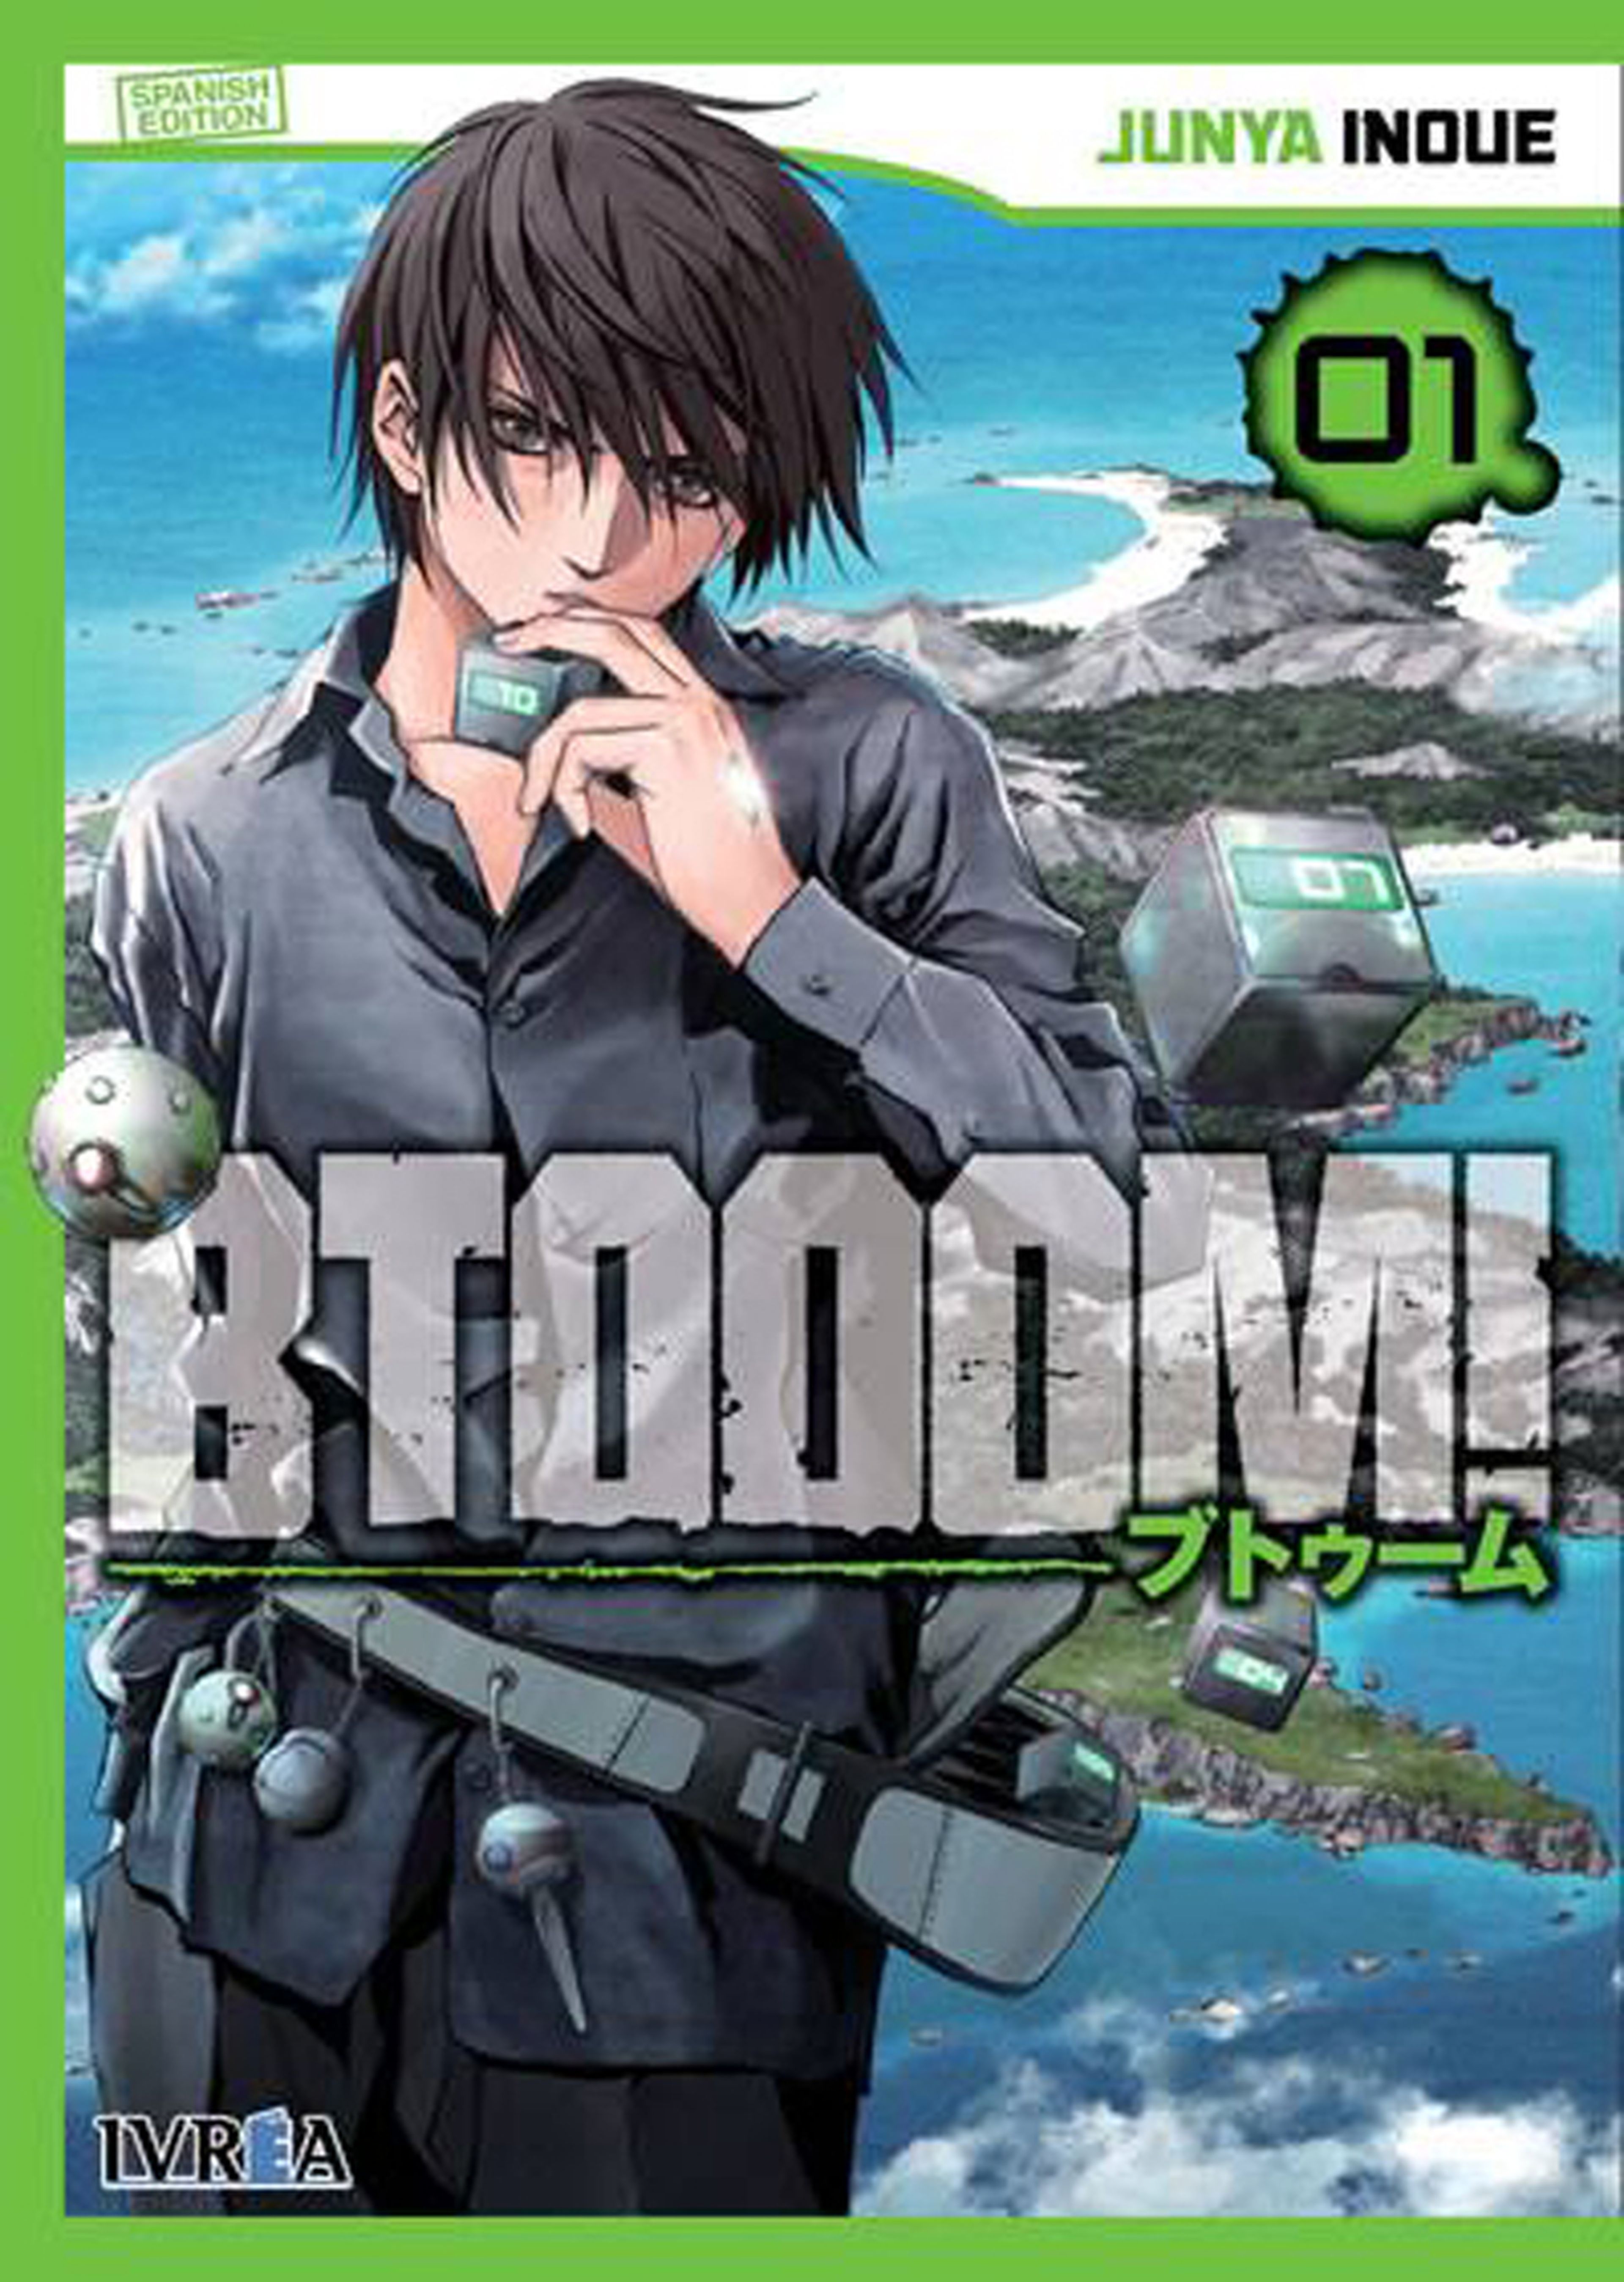 Así es la portada de la edición española de BTOOOM!